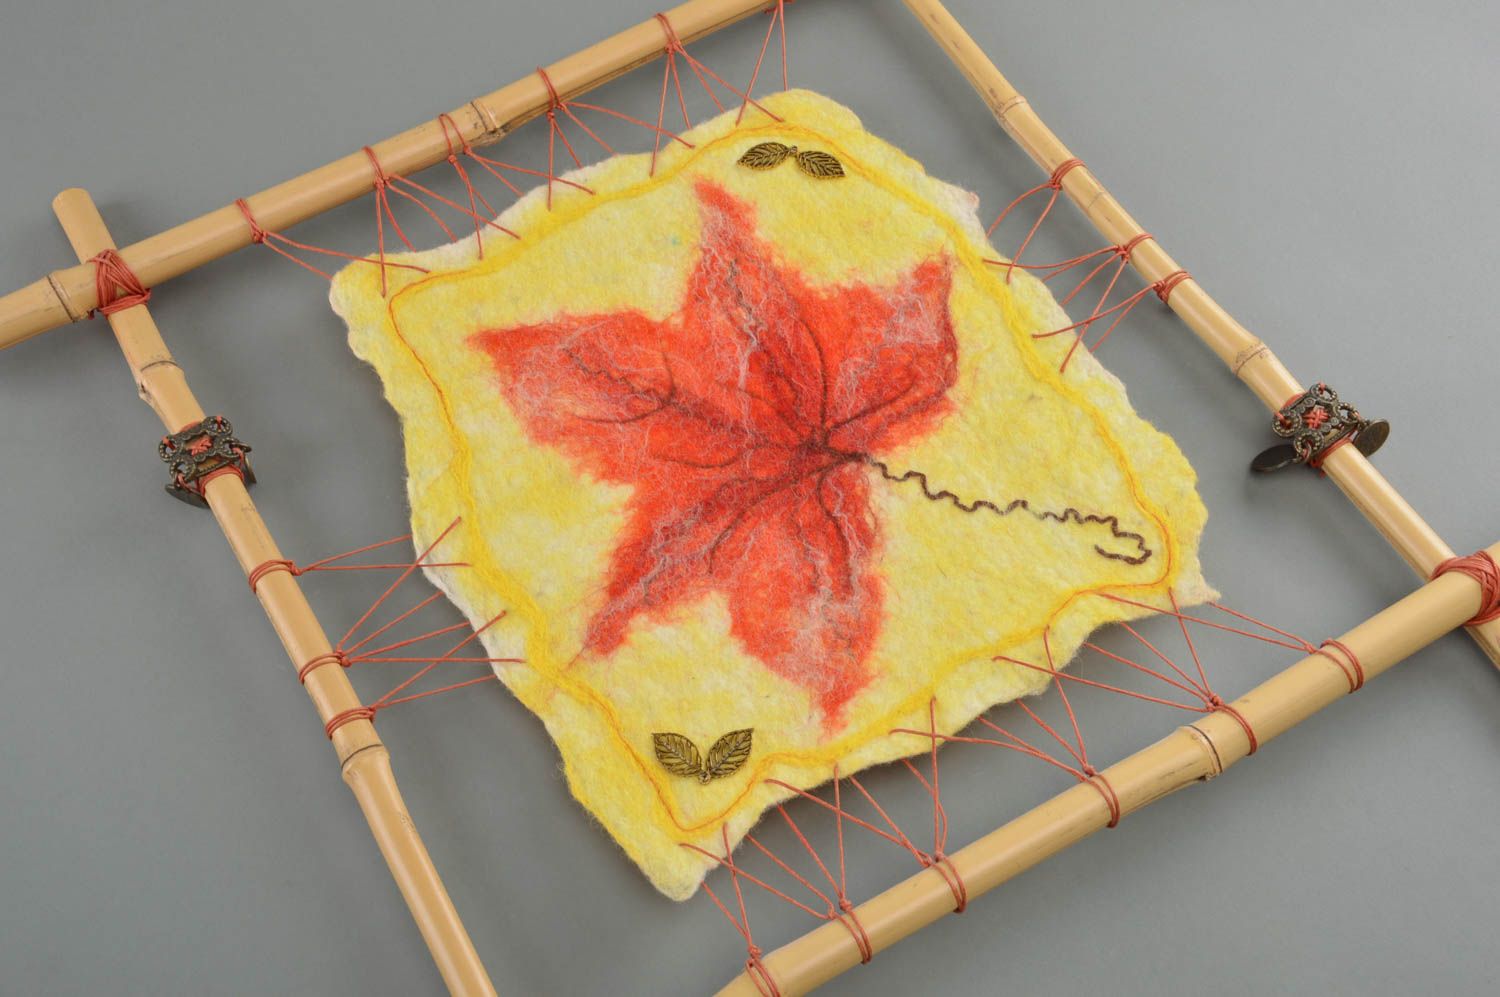 Панно в бамбуковой раме текстильное в технике валяния желтое необычное хэнд мейд фото 1